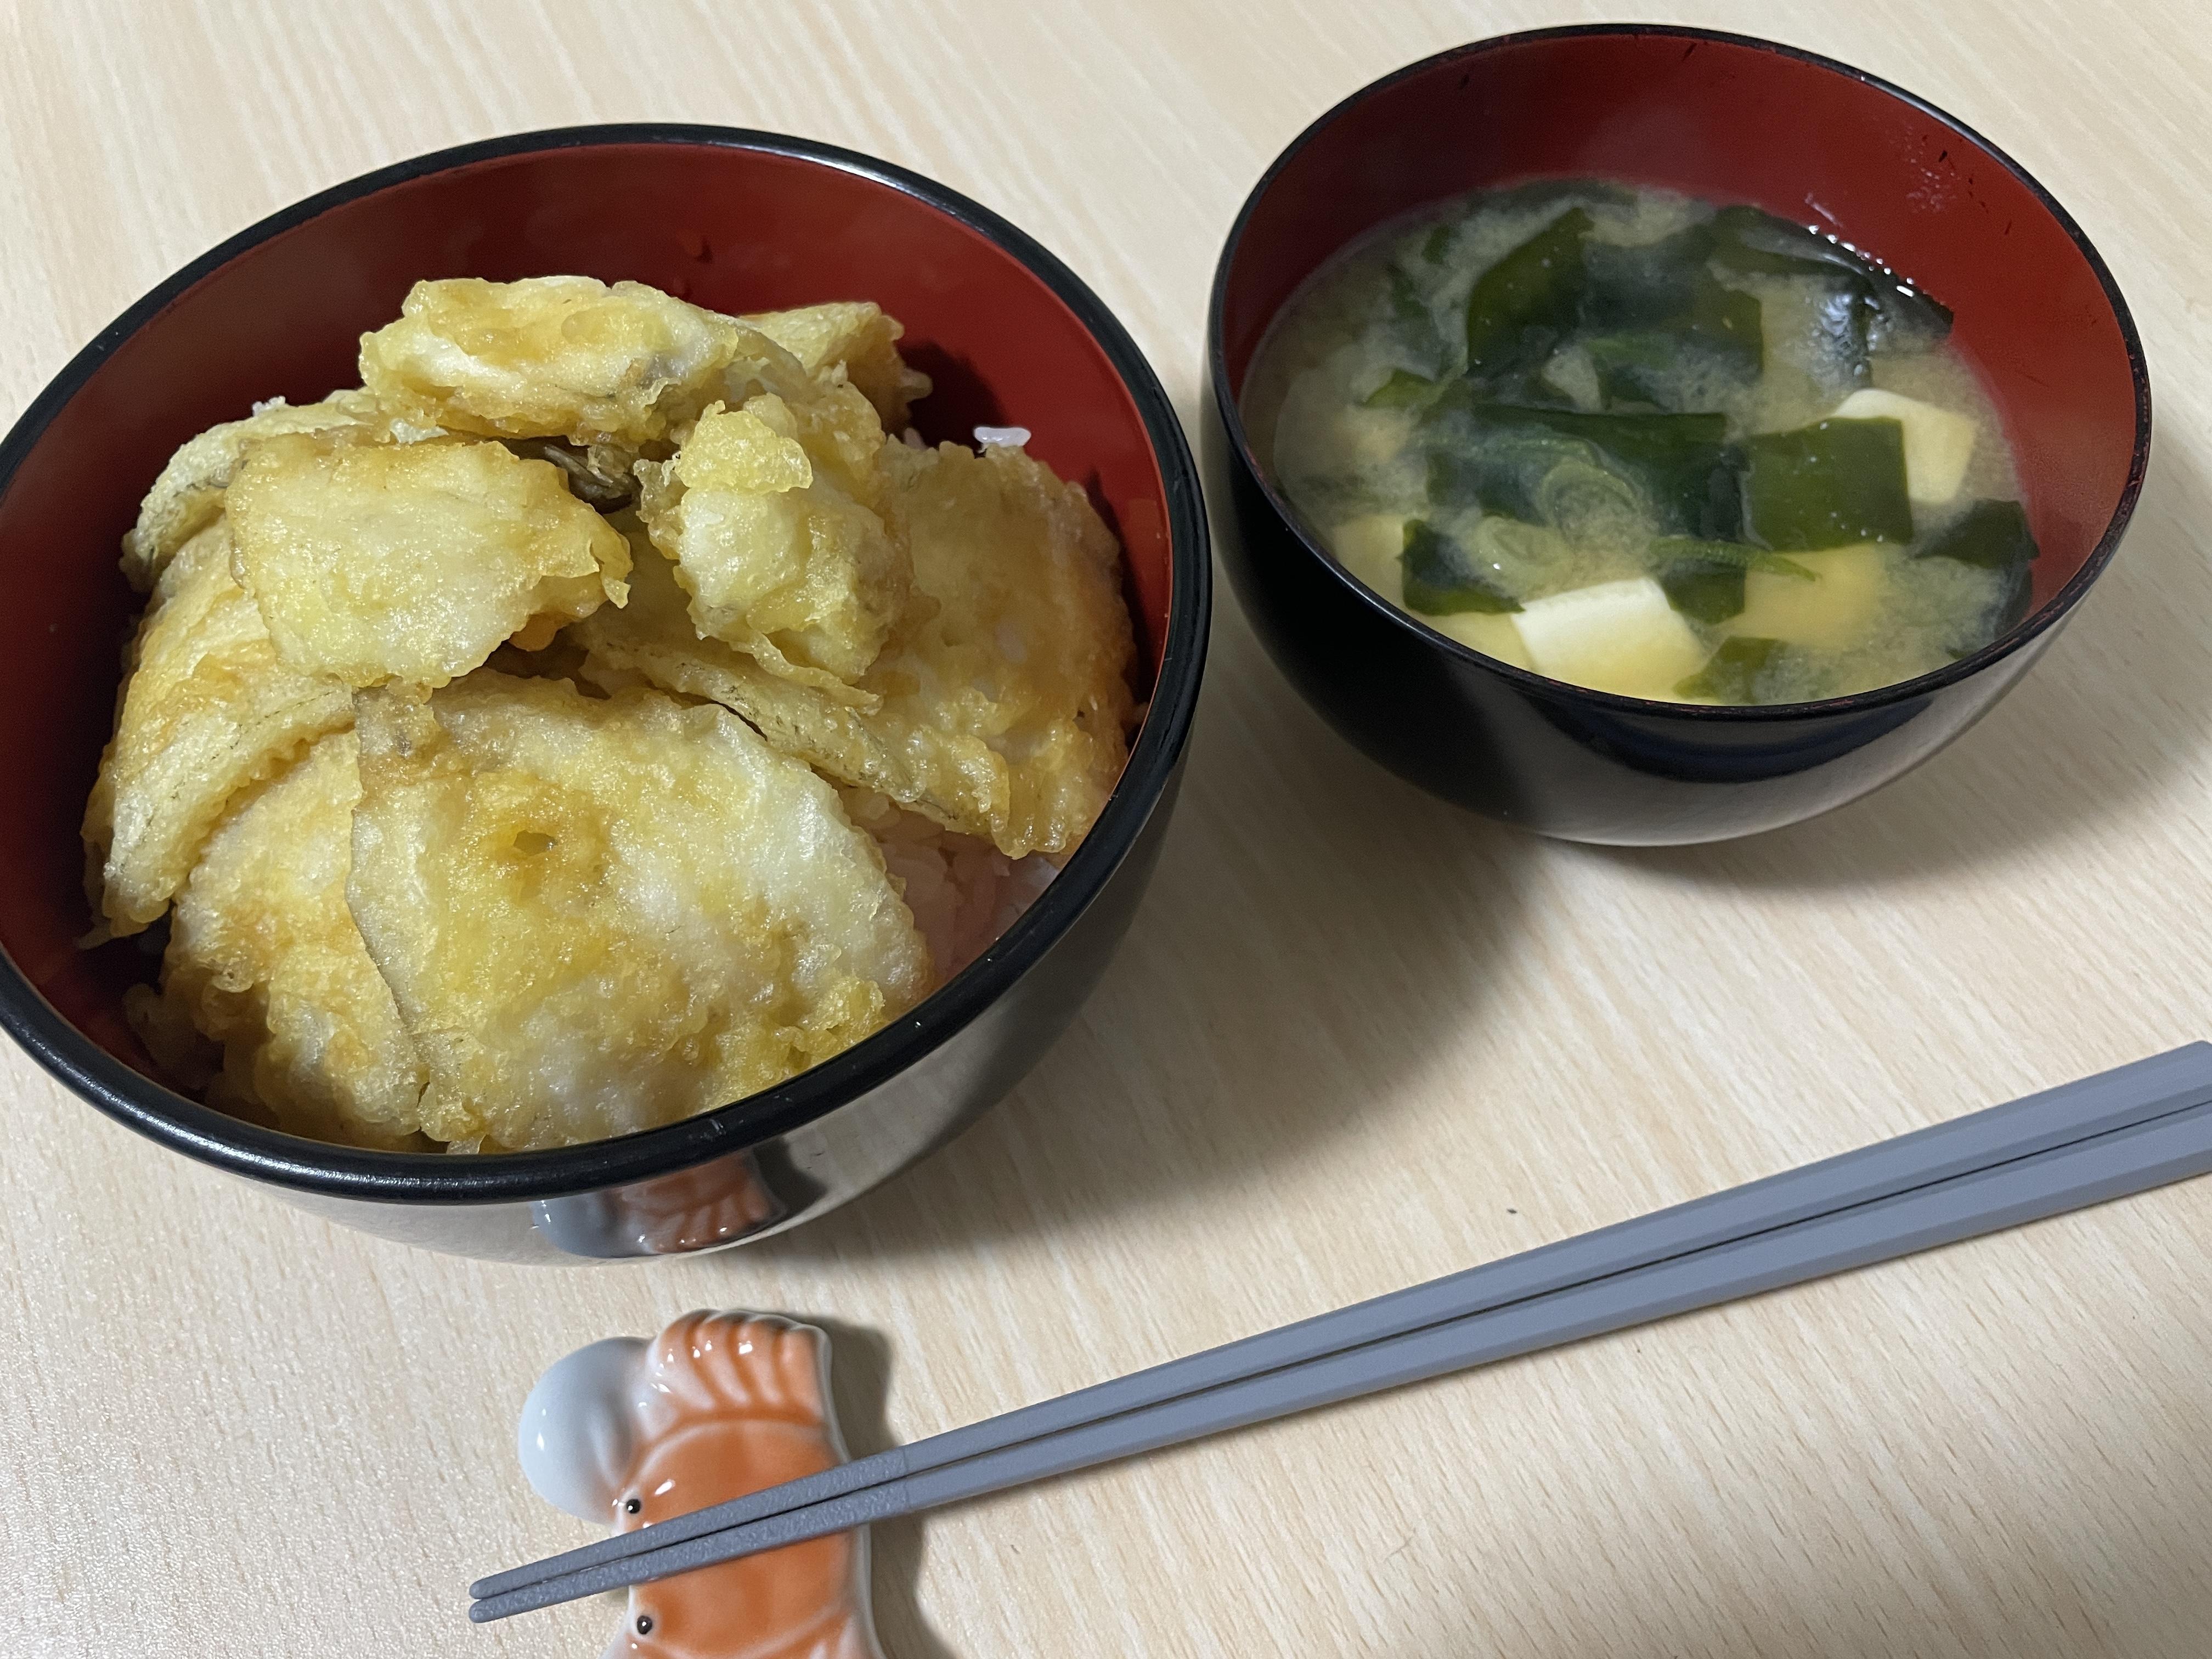 シロギスの天ぷらは絶品！
お味噌汁と一緒にいかがですか。